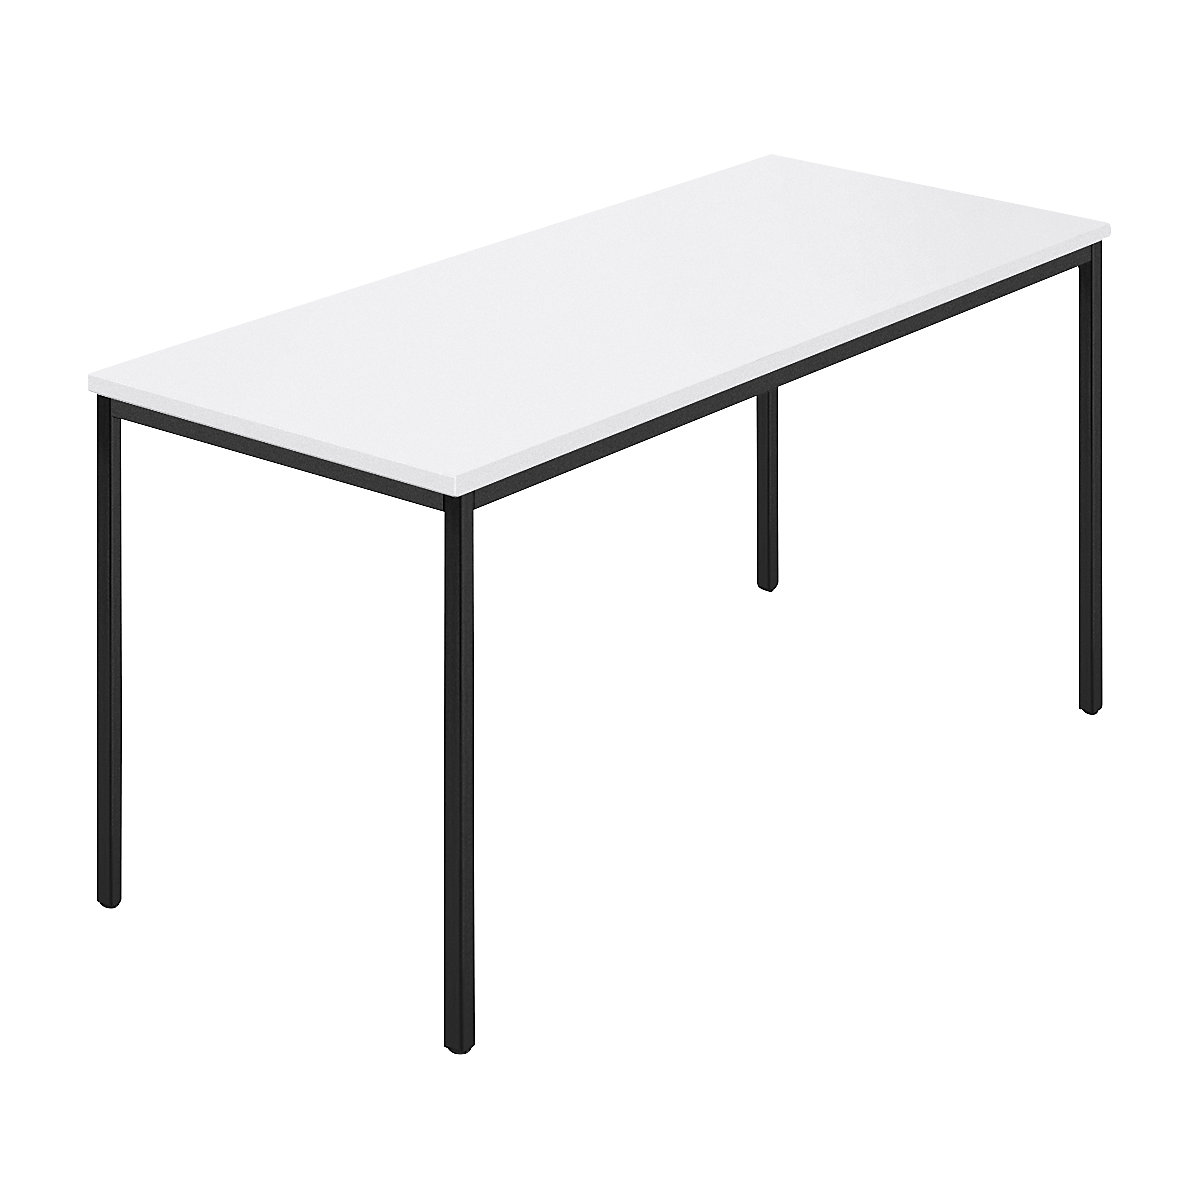 Rechthoekige tafel, vierkante buis met coating, b x d = 1400 x 700 mm, wit / antracietkleurig-8